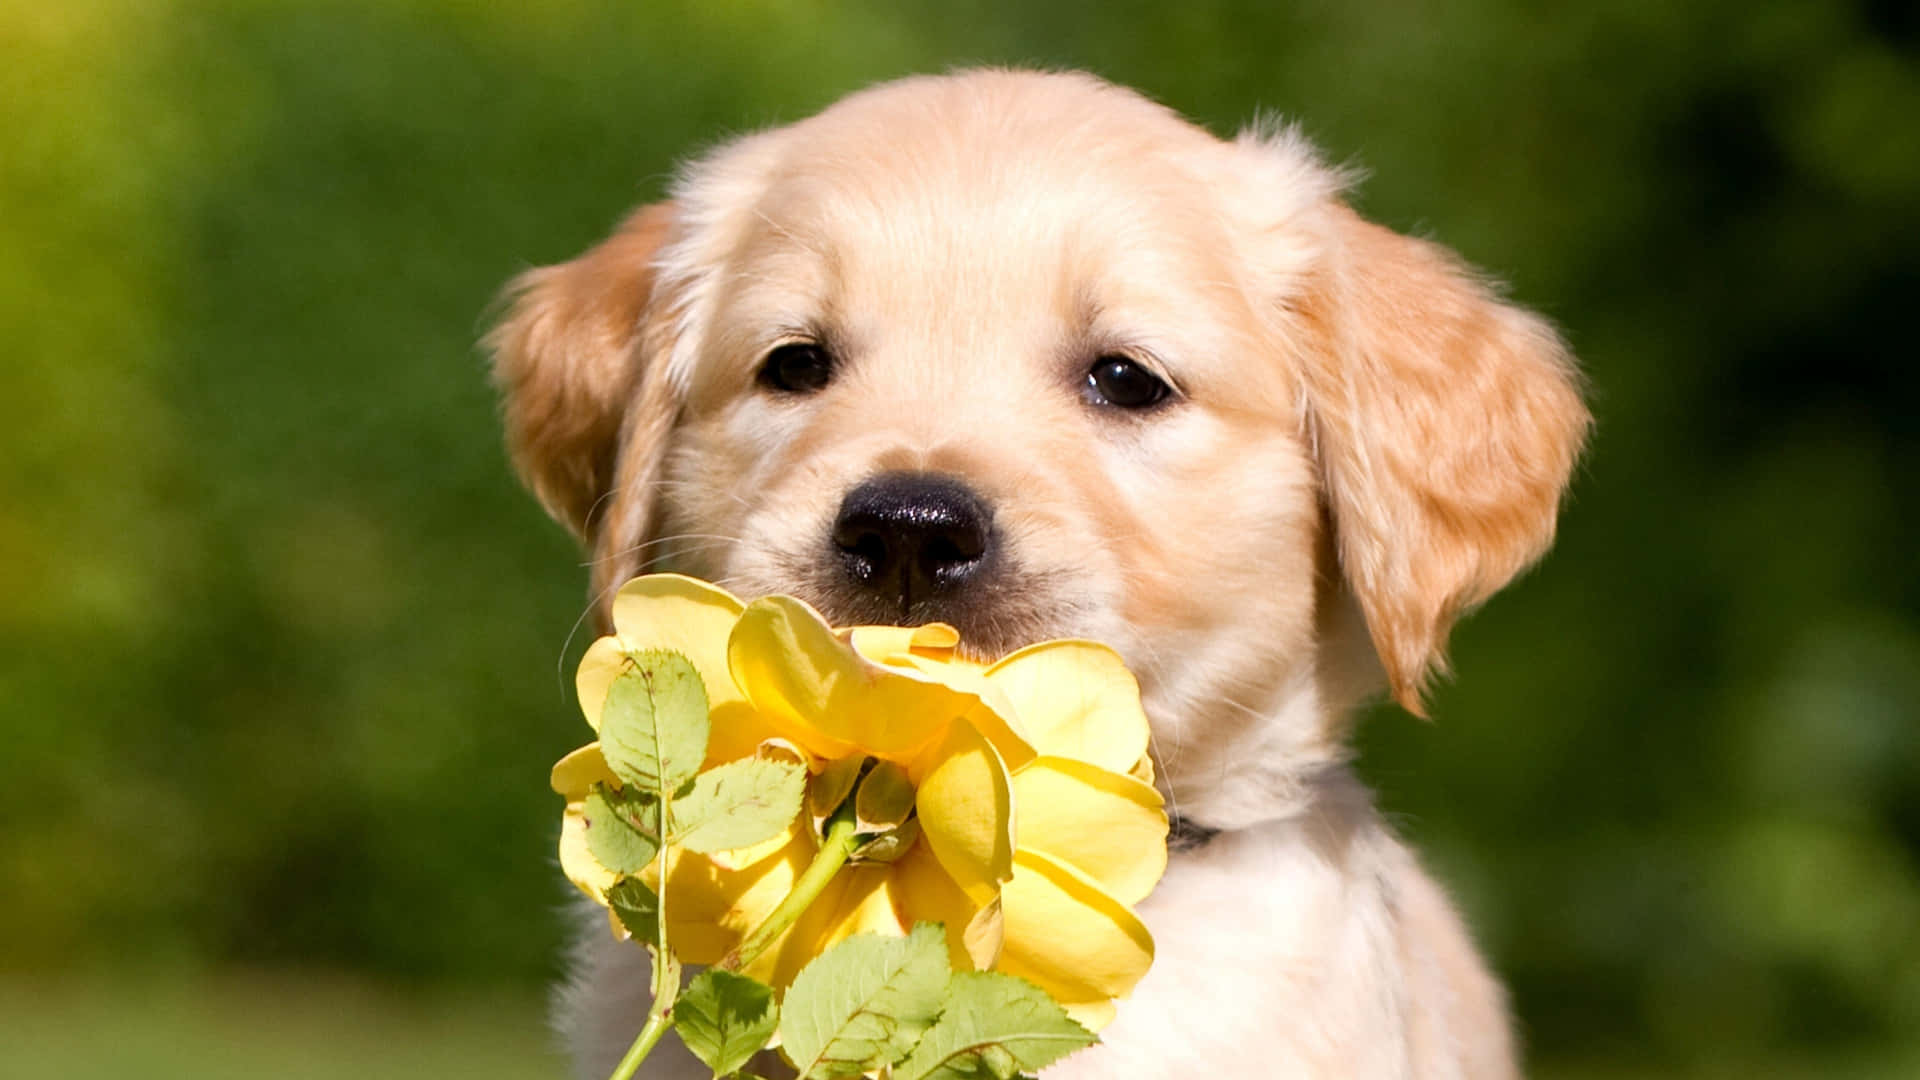 A Golden Retriever Puppy Holding A Yellow Flower